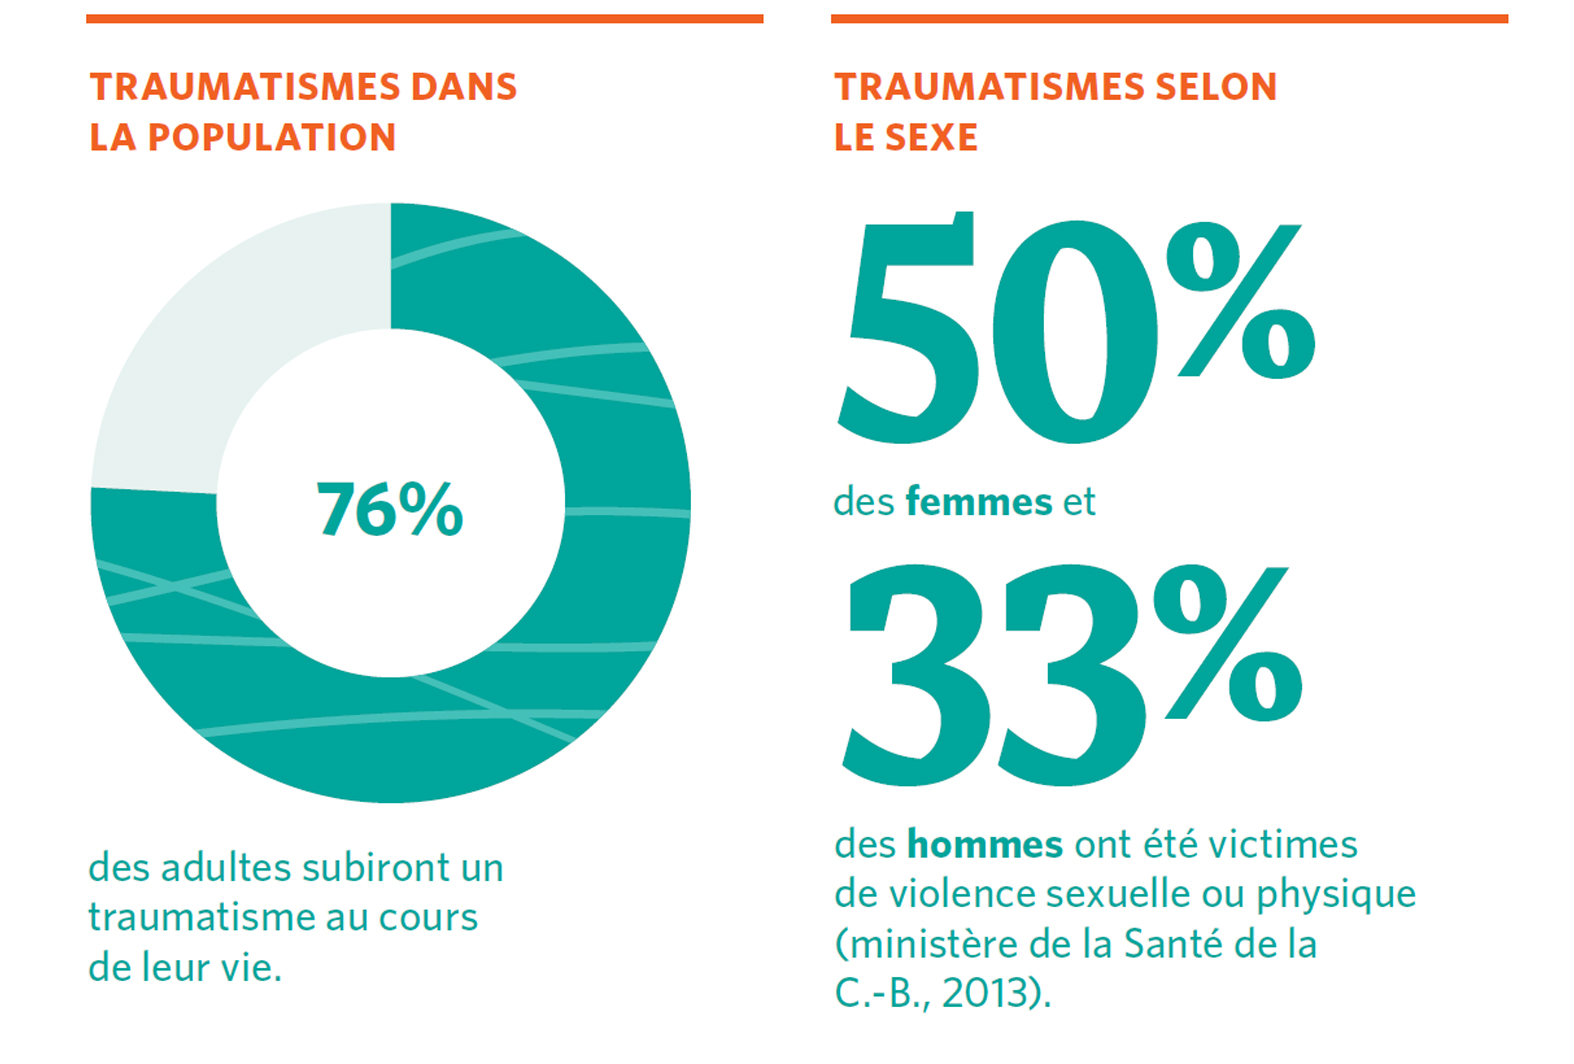 76% des adultes subiront un traumatisme au cours de leur vie. 50% des femmes et 33% des hommes ont été victimes de violence sexuelle ou physique (ministère de la Santé de la C.-B., 2013).